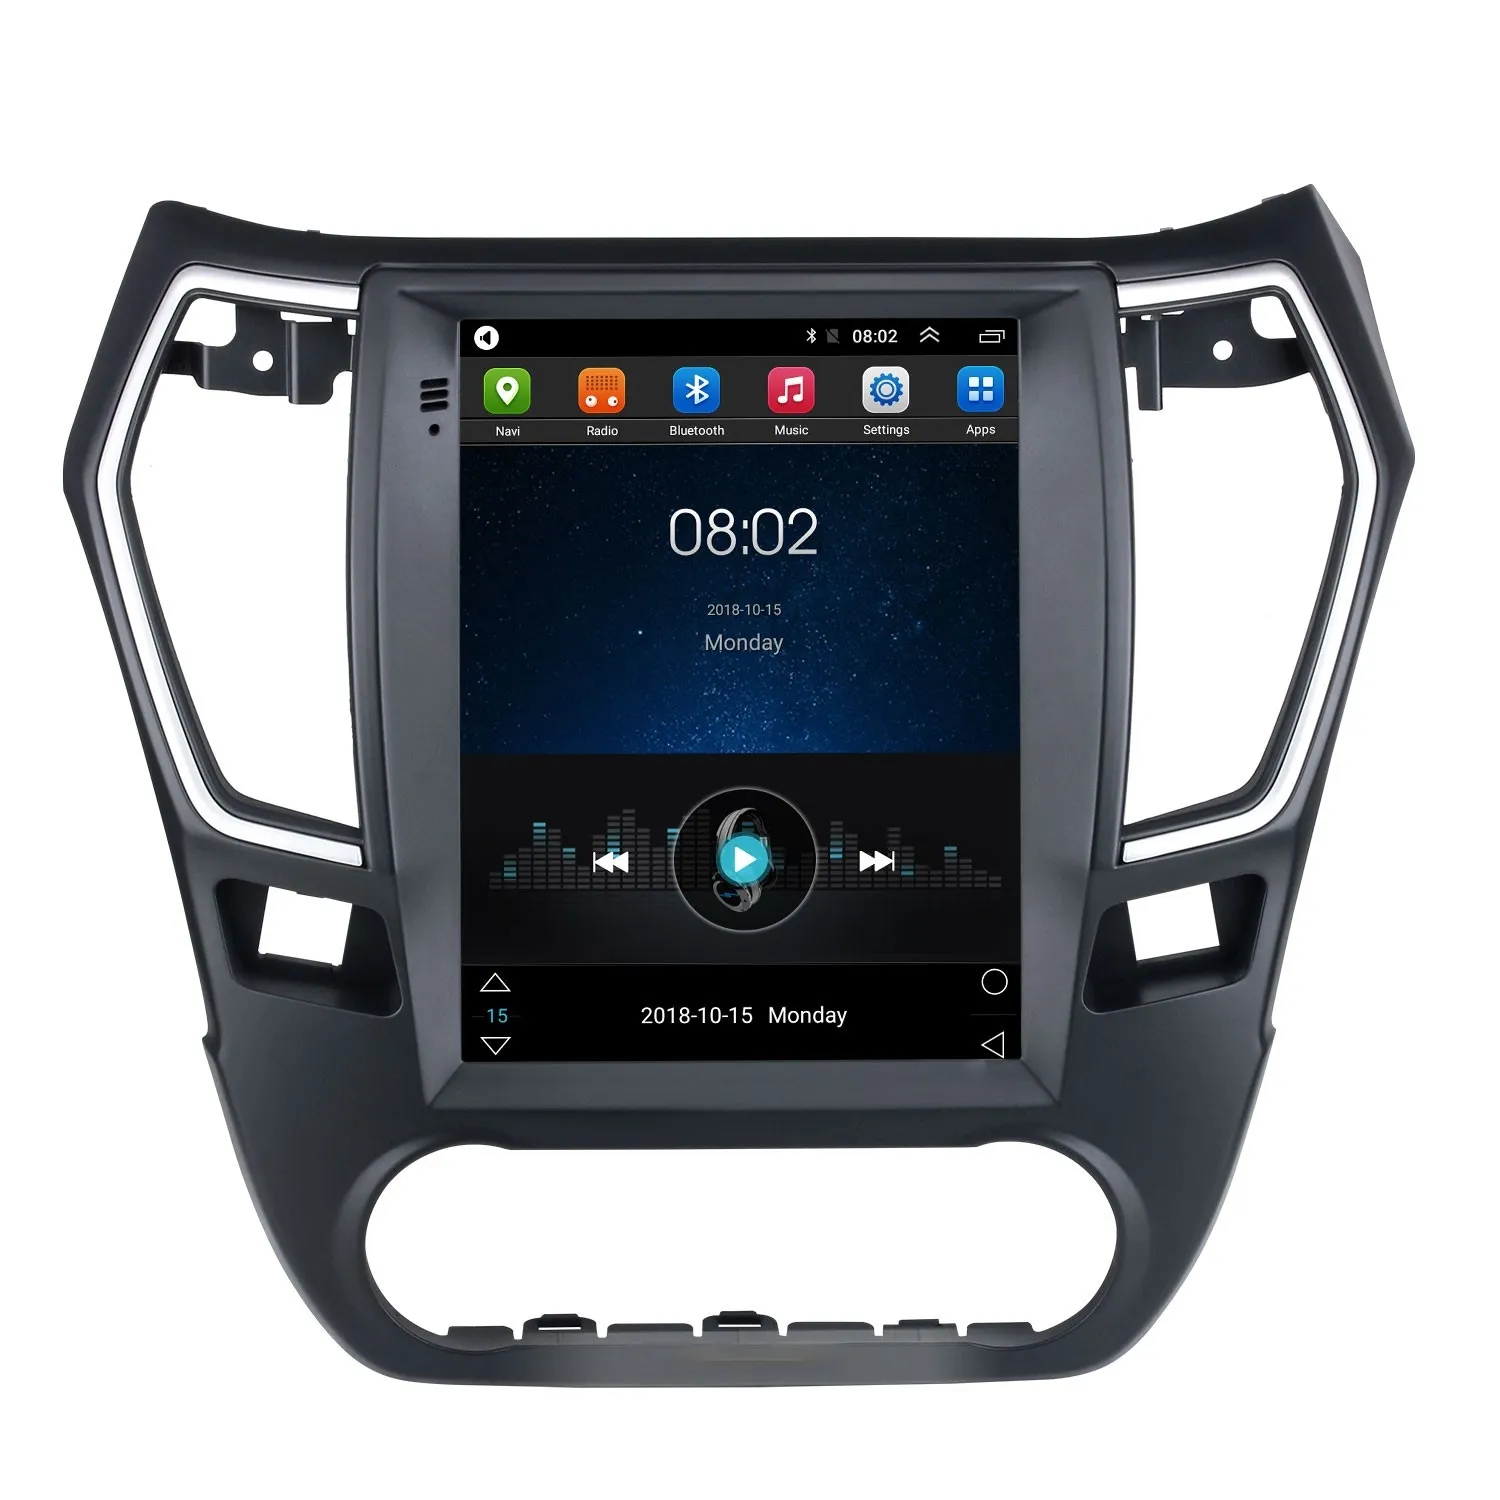 Lettore radio Dvd per auto multimediale per DongFeng EOLO A30 Android 10 Campione di navigazione a schermo verticale Accetta